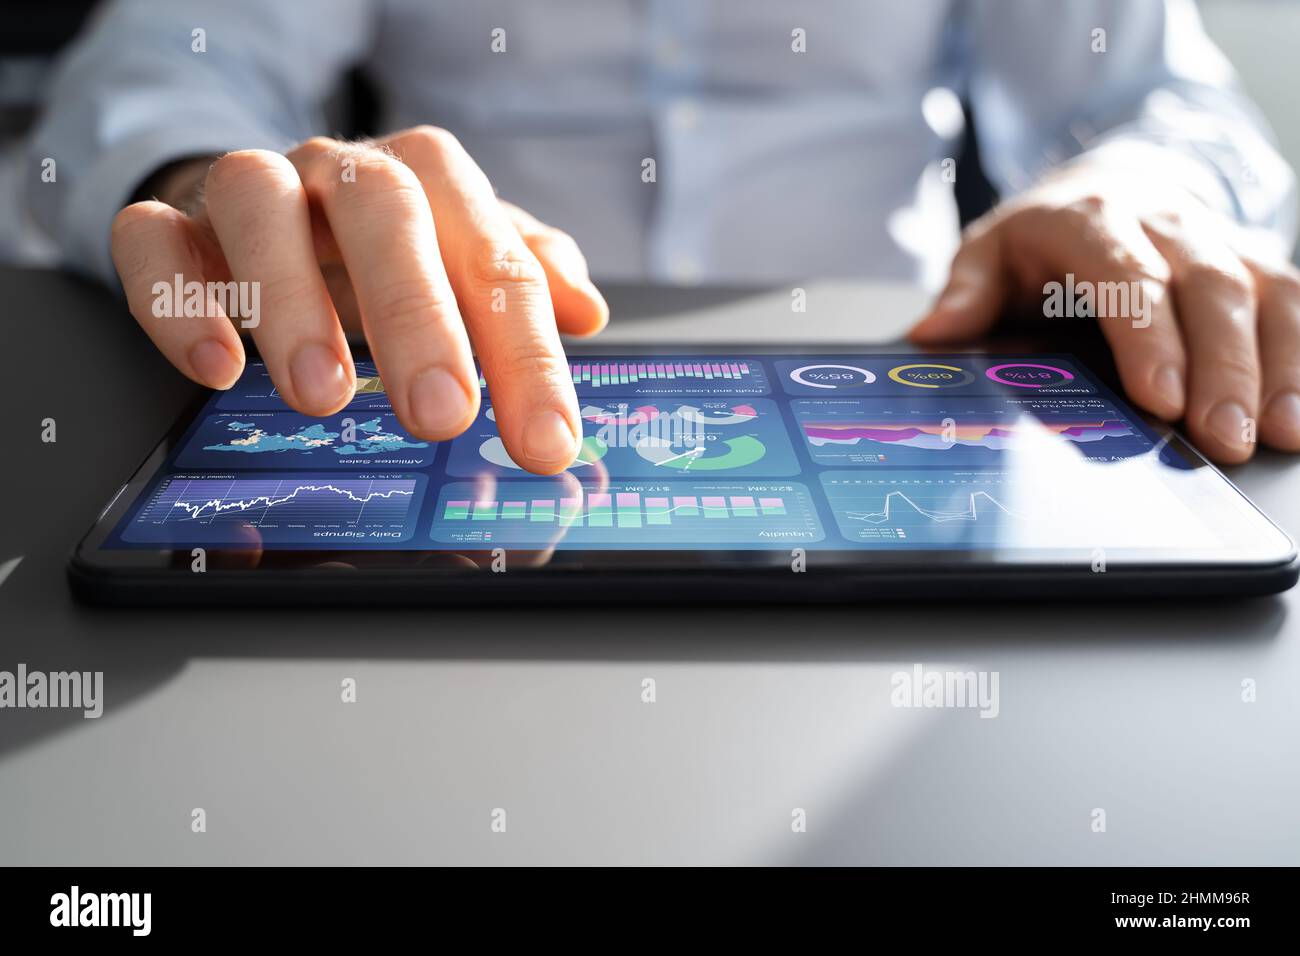 Analyste financier utilisant la technologie analytique sur tablette Banque D'Images